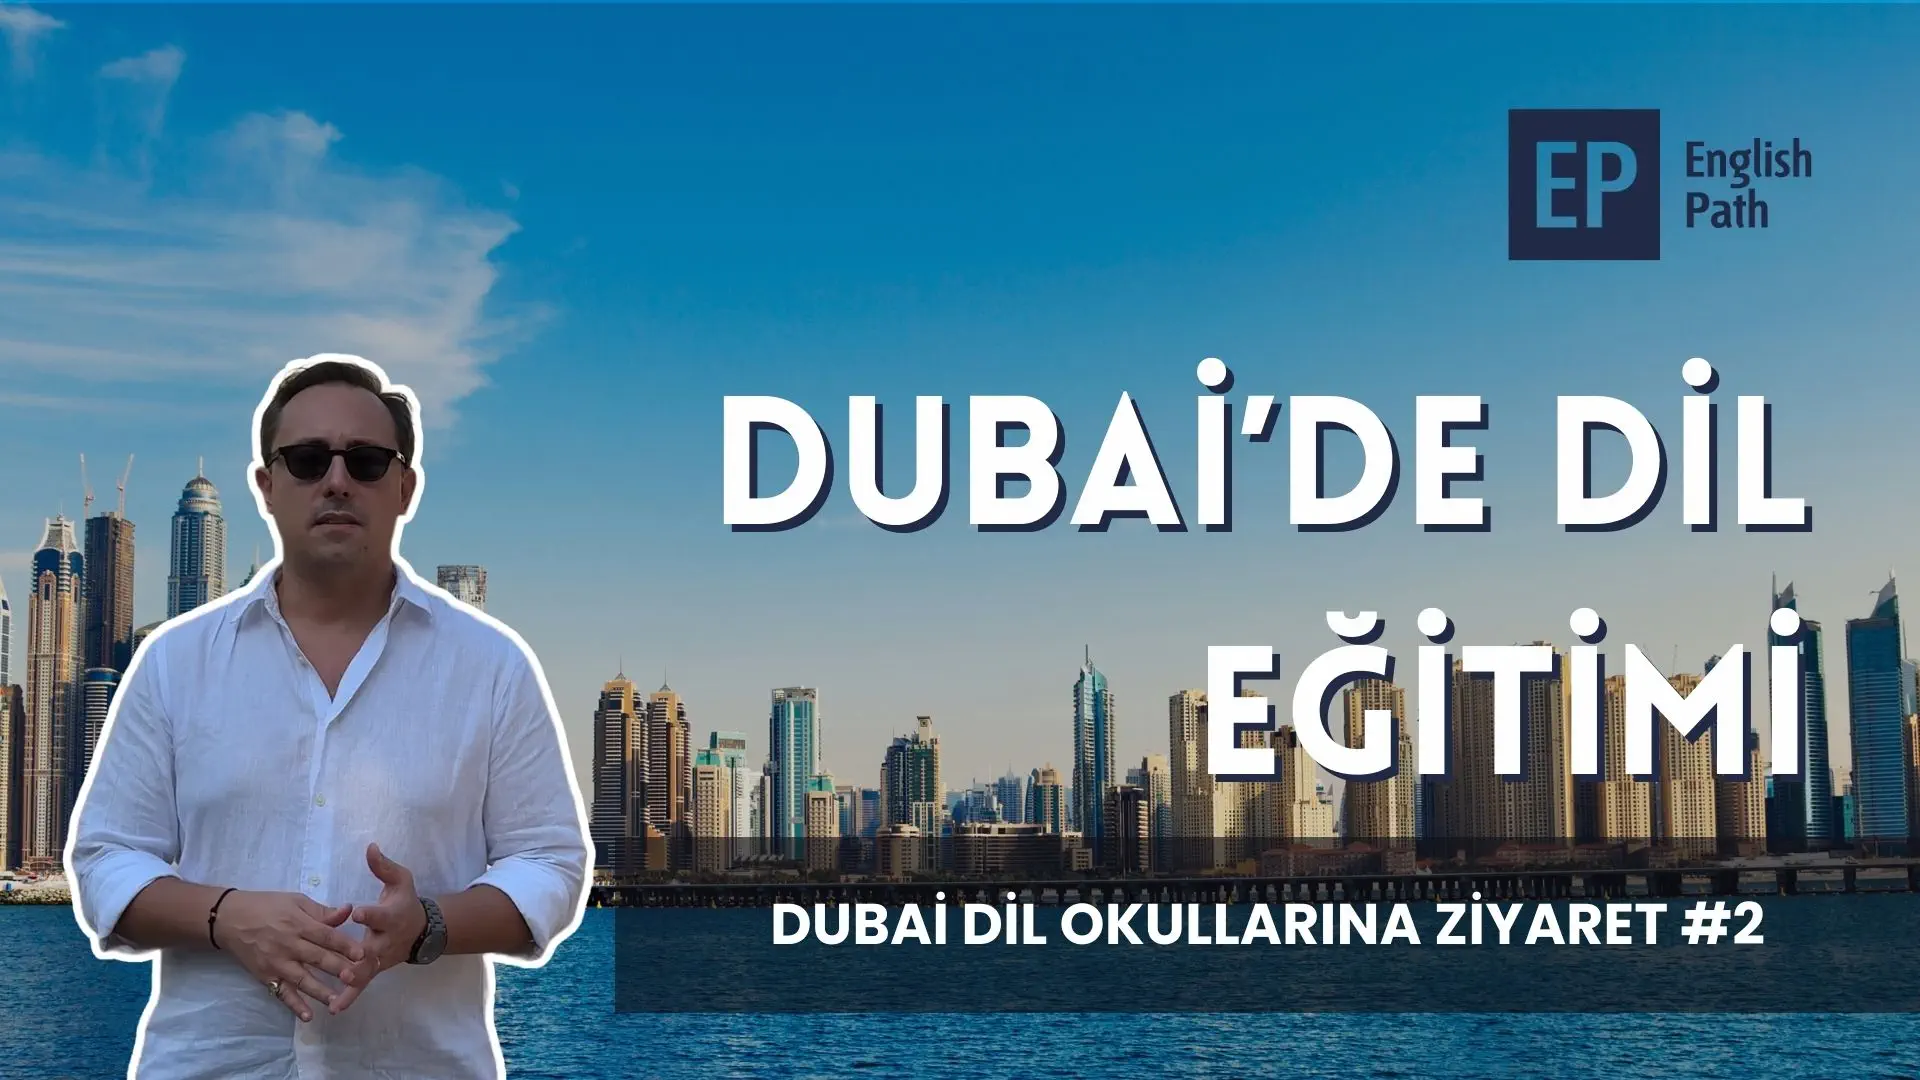 Dubai Dil Okulu Ziyaretlerimiz English Path Dil OKulu ile Devam Ediyor